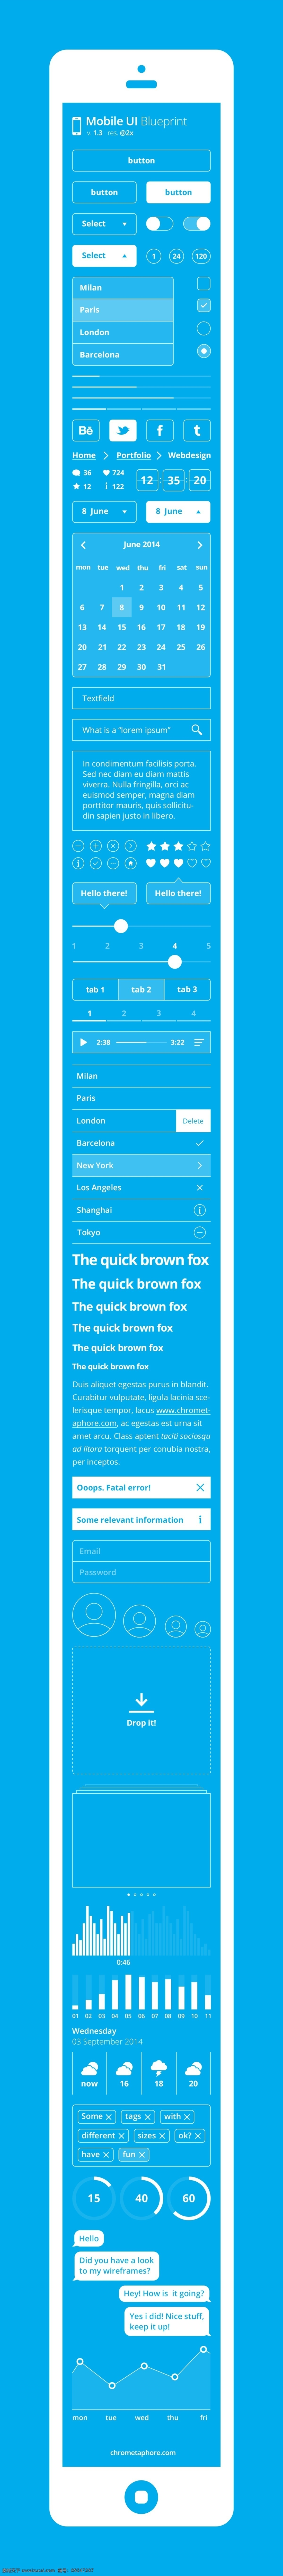 蓝色 手机 ui 界面 app 系列 小 清新 风格 ui界面 icon 图标 青色 天蓝色